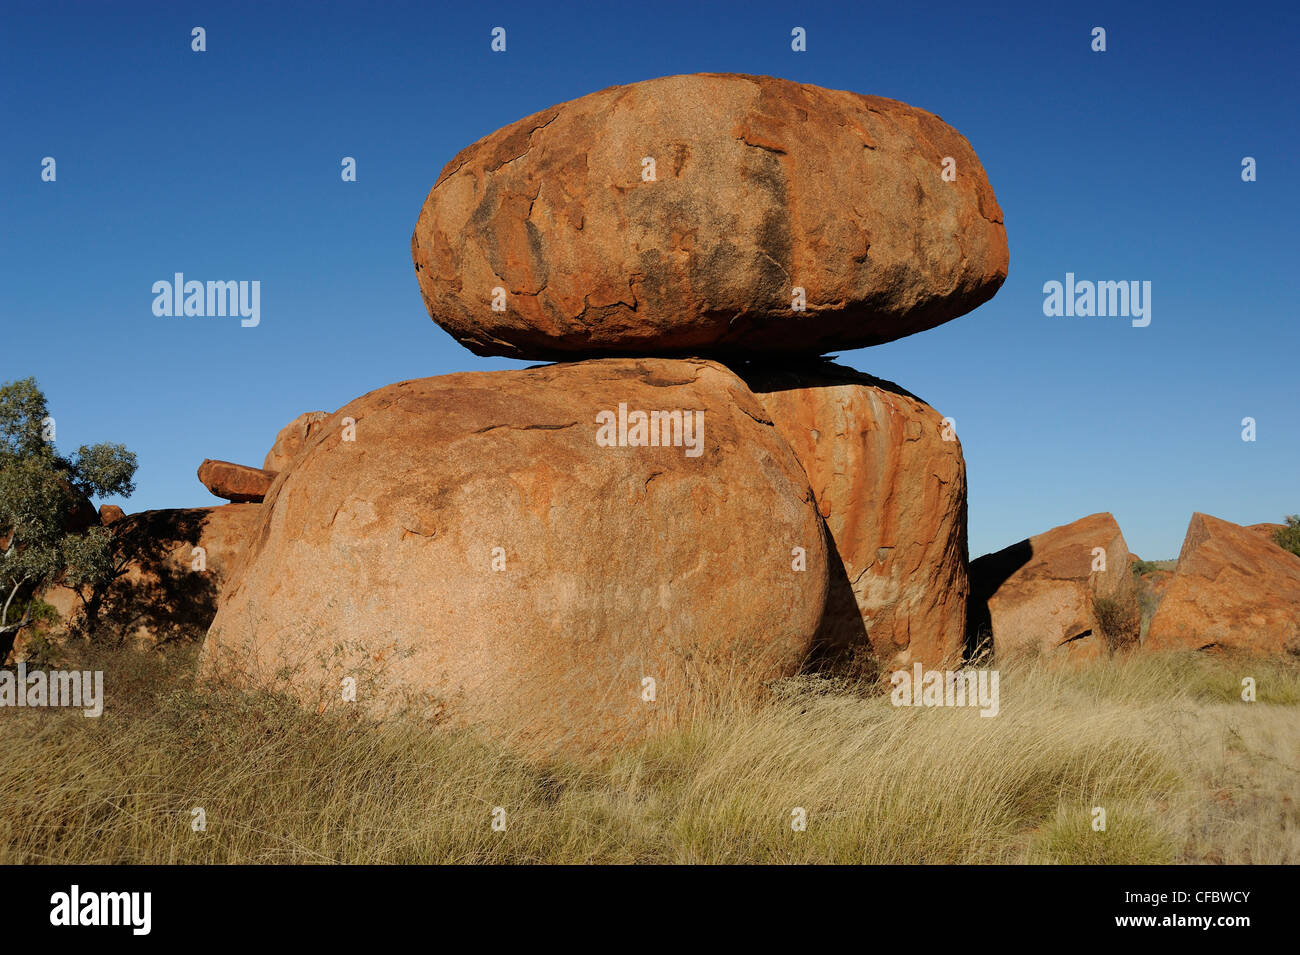 Los diablos los mármoles, piedras, Wauchope, Stuart Highway, el Territorio del Norte, Australia Foto de stock